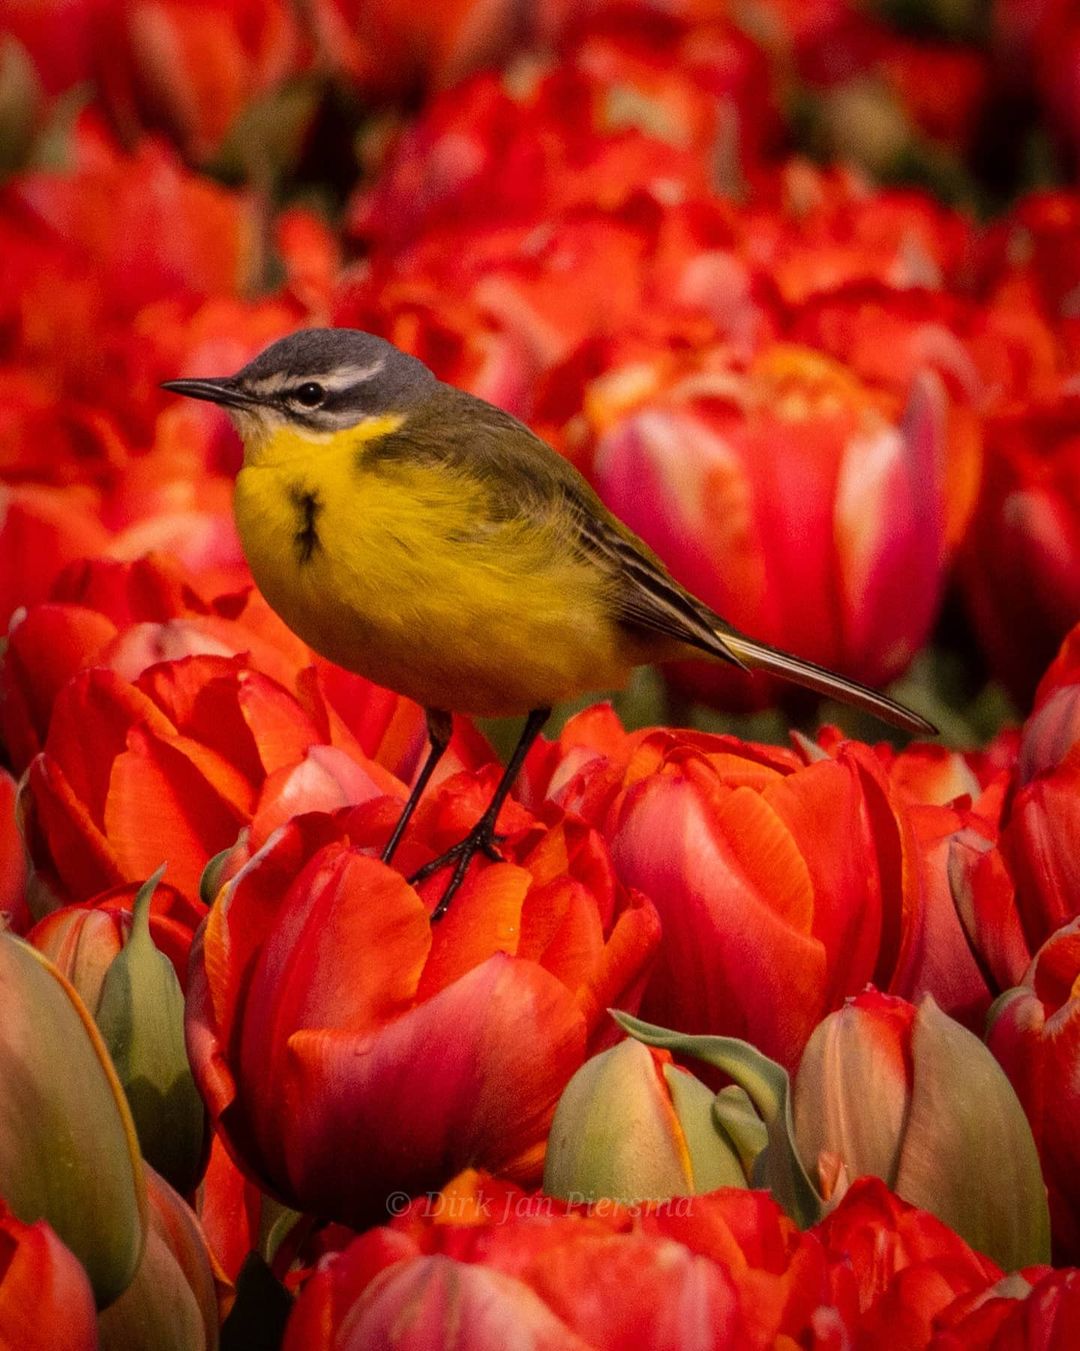 Поля цветущих тюльпанов в Нидерландах, аромат которых дурманит даже через дисплей Голландия,Нидерланды,цветы